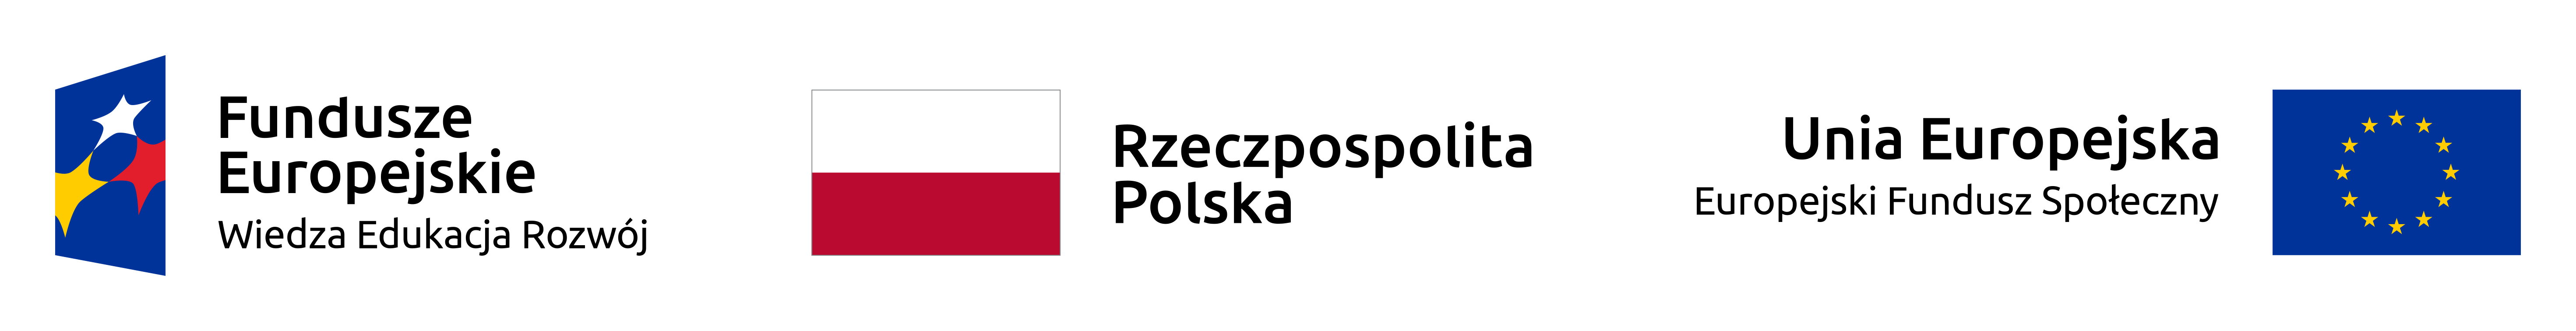 Logotypy: Fundusze Europejskie, Rzeczpospolita Polska, Unia Europejska  - Europejski Fundusz społeczny